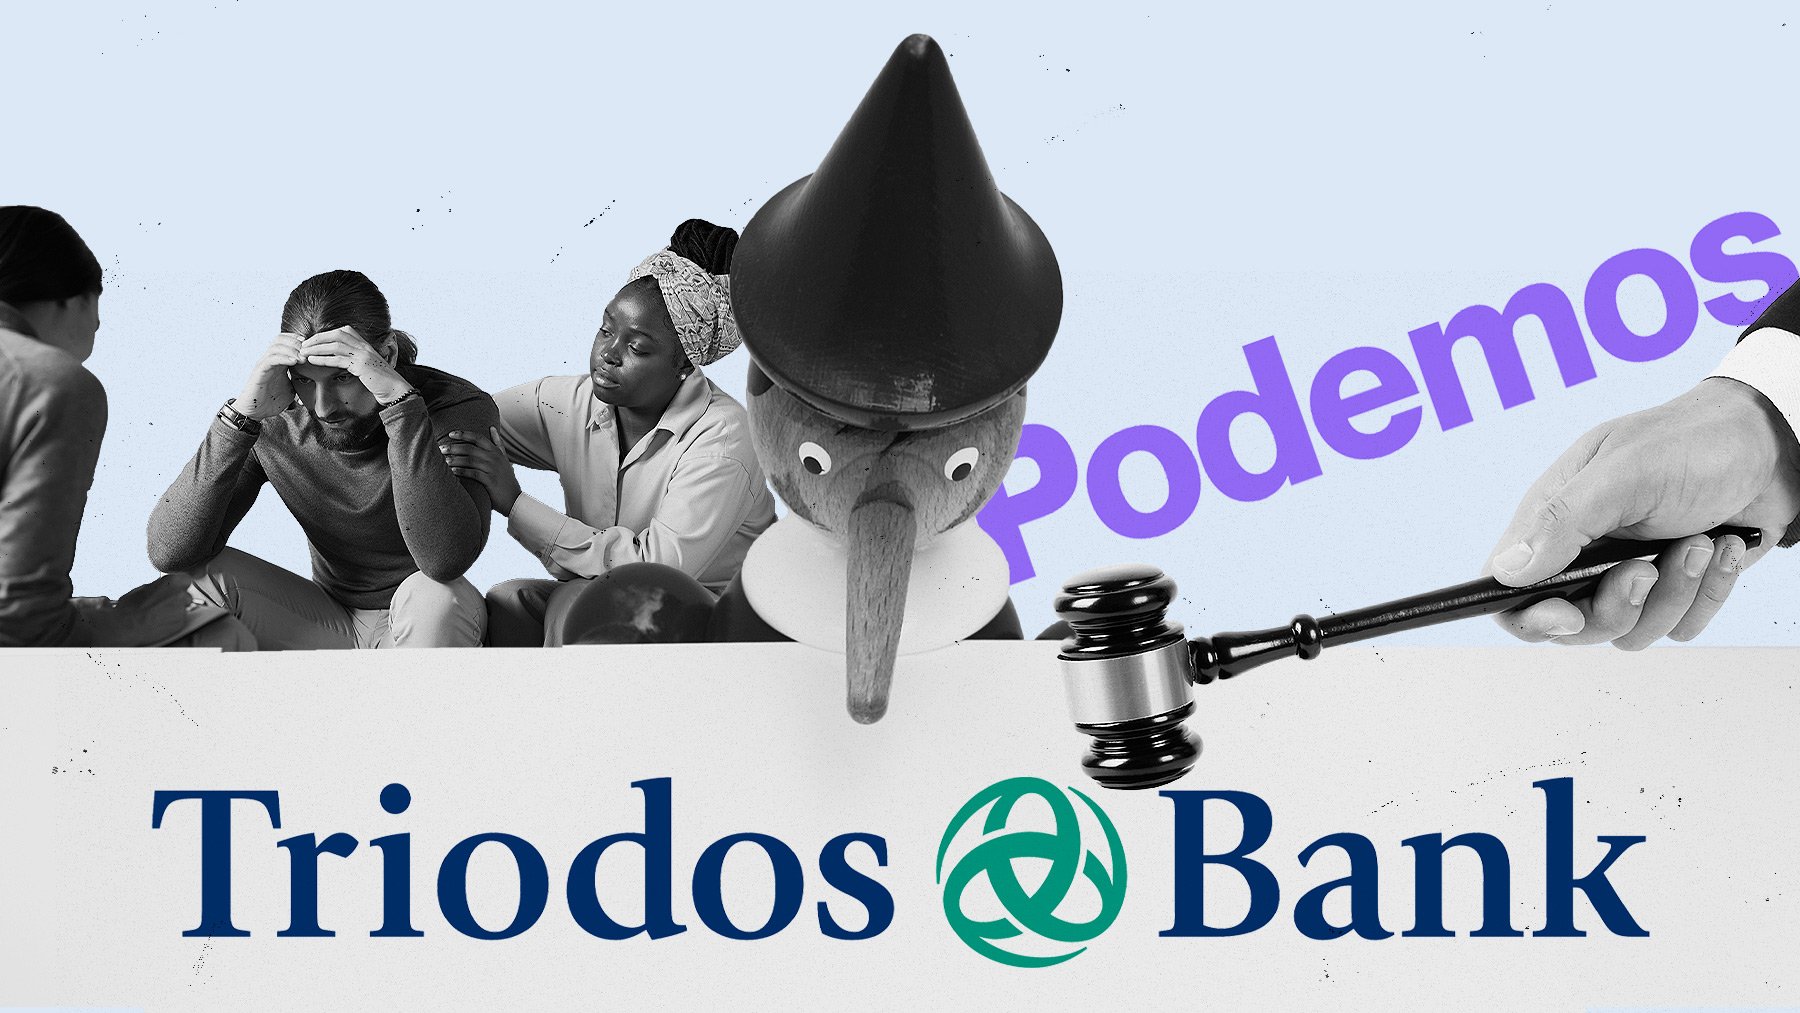 El fundador de Podemos, Juan Carlos Monedero, es titular de 86 de cuentas bancarias de Triodos Bank.